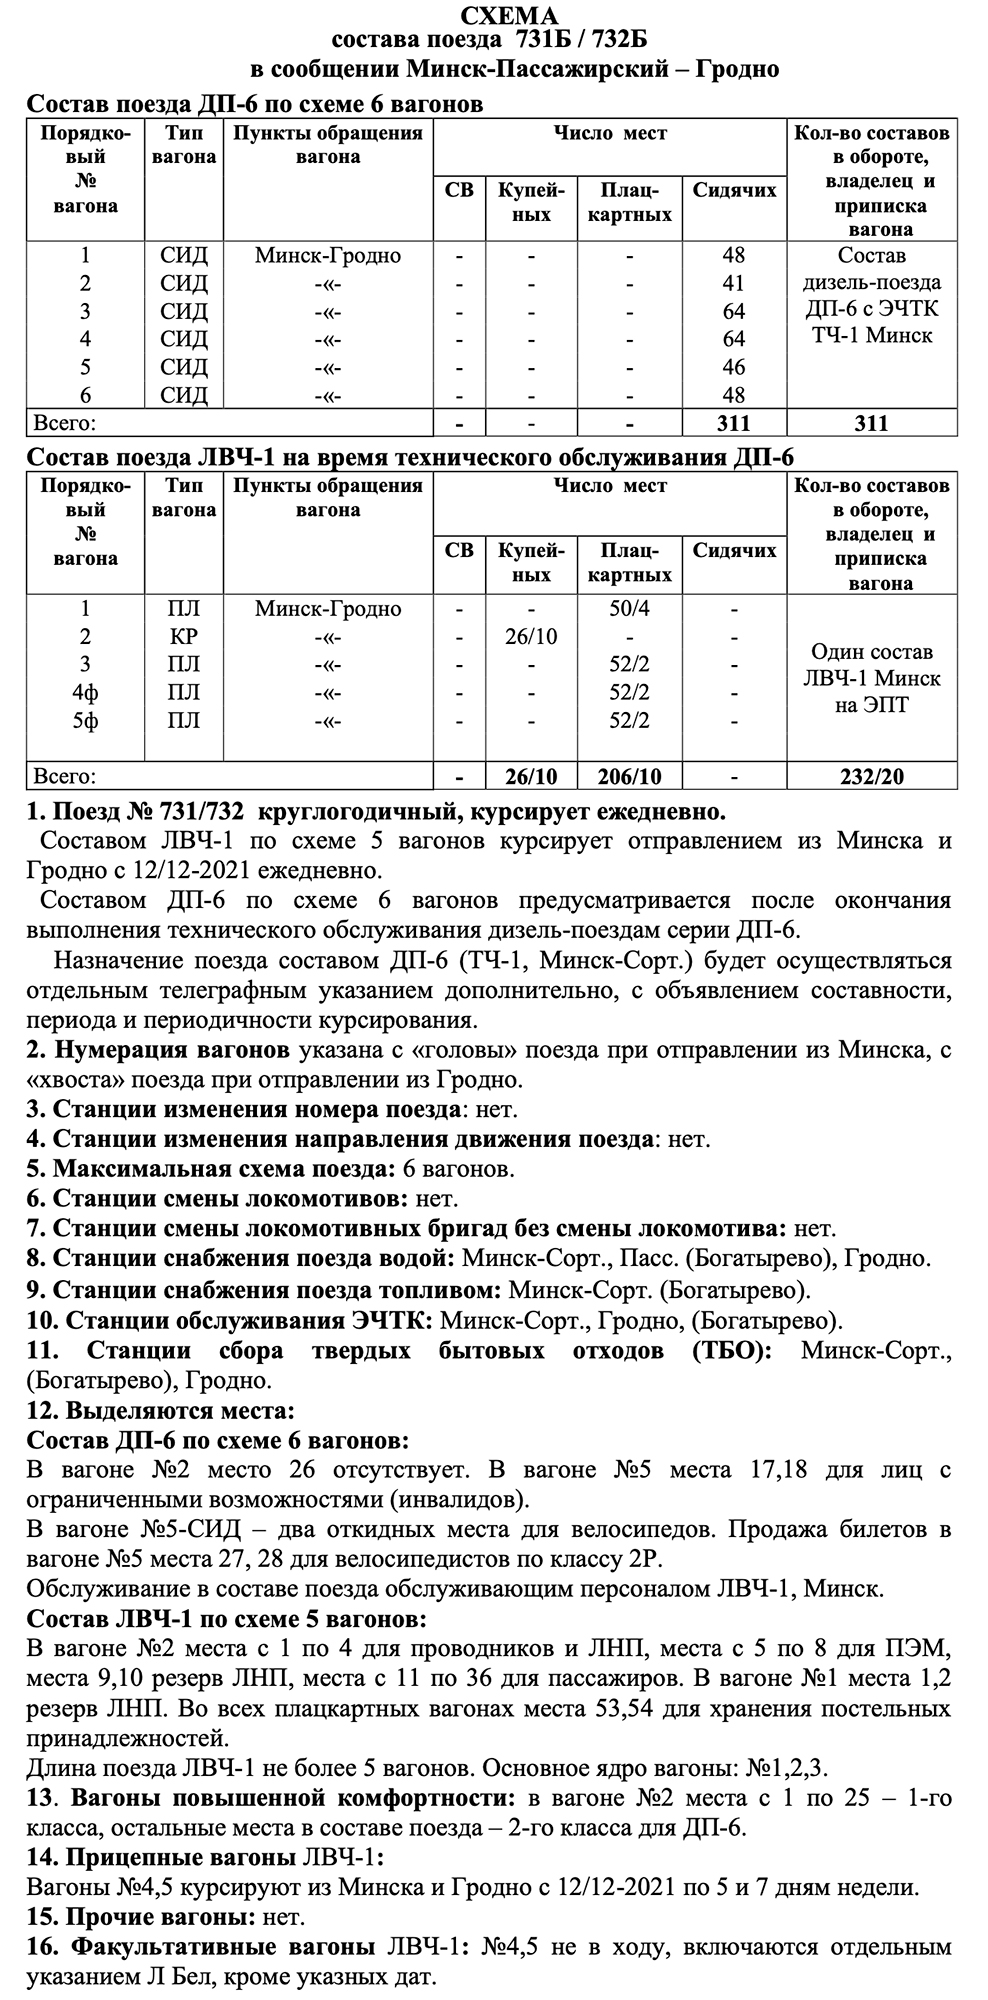 Схема формирования составов поезда №731/732 сообщением Минск-Пассажирский - Гродно